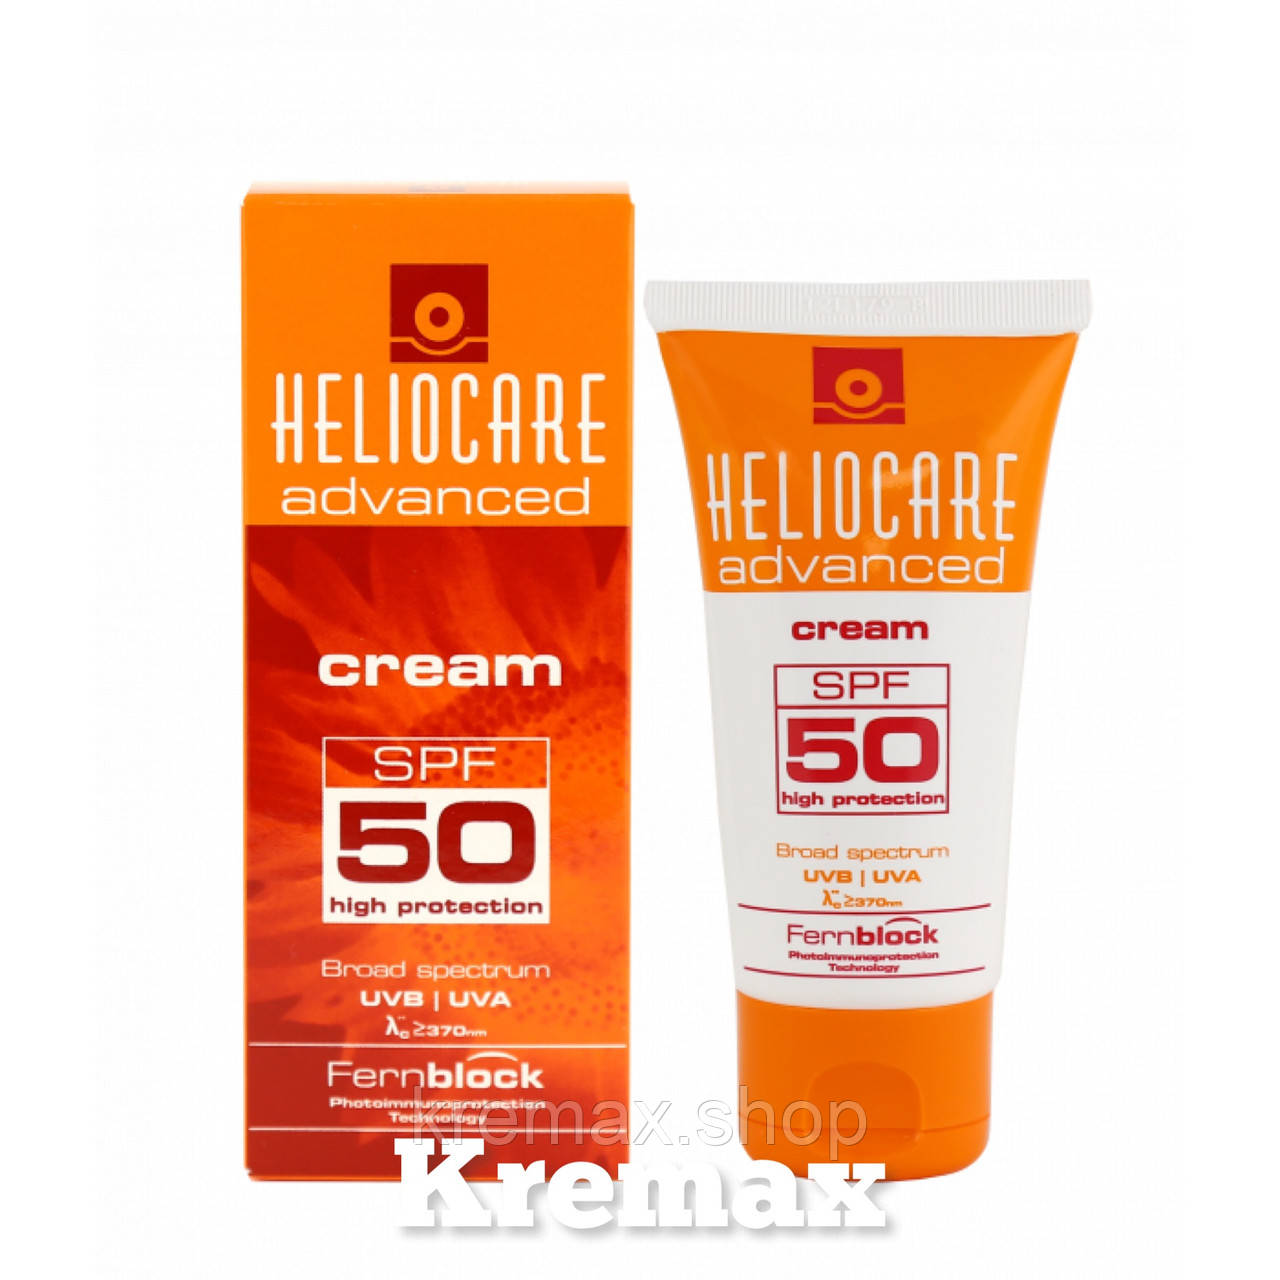 Heliocare fluid spf 50. Cream SPF 50 солнцезащитный крем SPF 50. Крем Heliocare SPF 50. Солнцезащитный крем Heliocare 360. Крем солнцезащитный SPF 90 Heliocare.